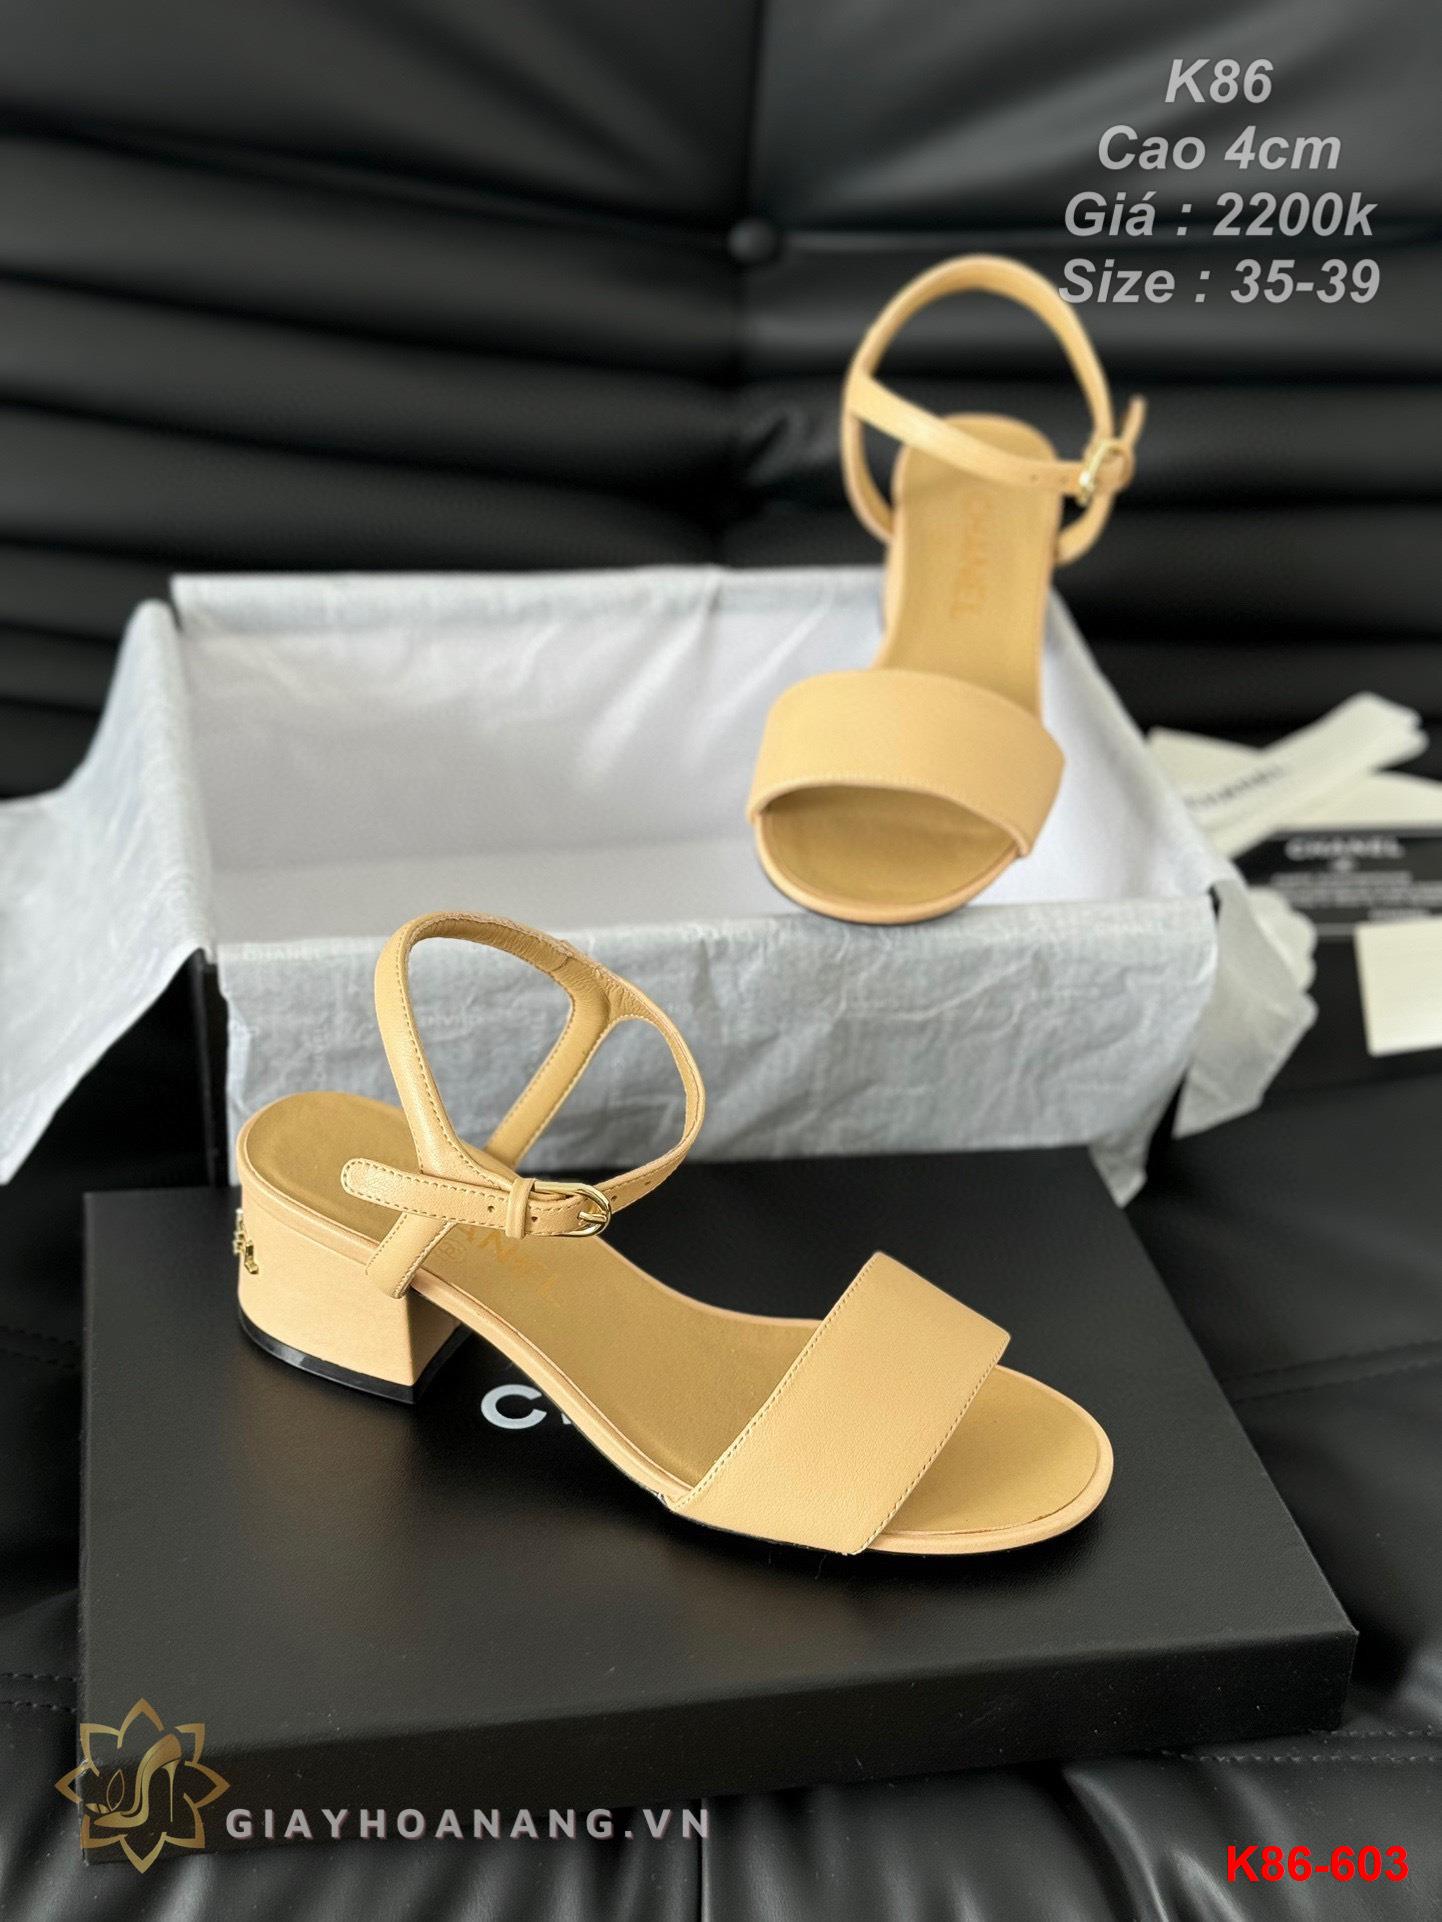 K86-603 Chanel sandal cao gót 4cm siêu cấp